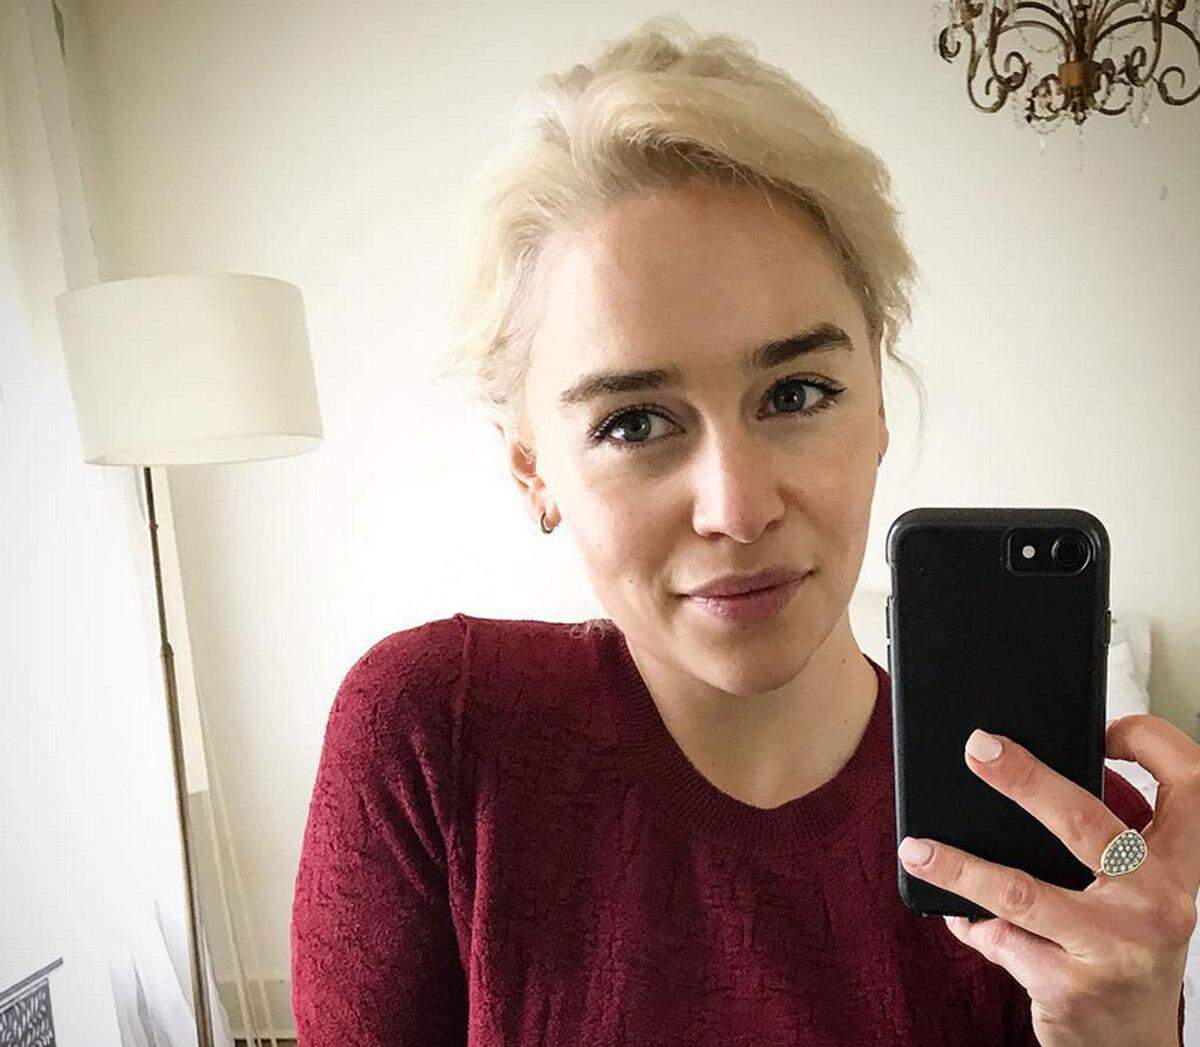 Lust auf die Fortsetzung der Serie hat sie aber offensichtlich. Am 20. September zog sie auf Instagram neben einem Selfie mit der neuen Haarfarbe eine erste Bilanz des Blondseins: "Mein IQ ist in etwa durchschnittlich geblieben, und mein Bedürfnis, in der Nähe feuerspuckender Kreaturen und unbequemer Eisenstühle zu sein, hat sich verdreifacht."